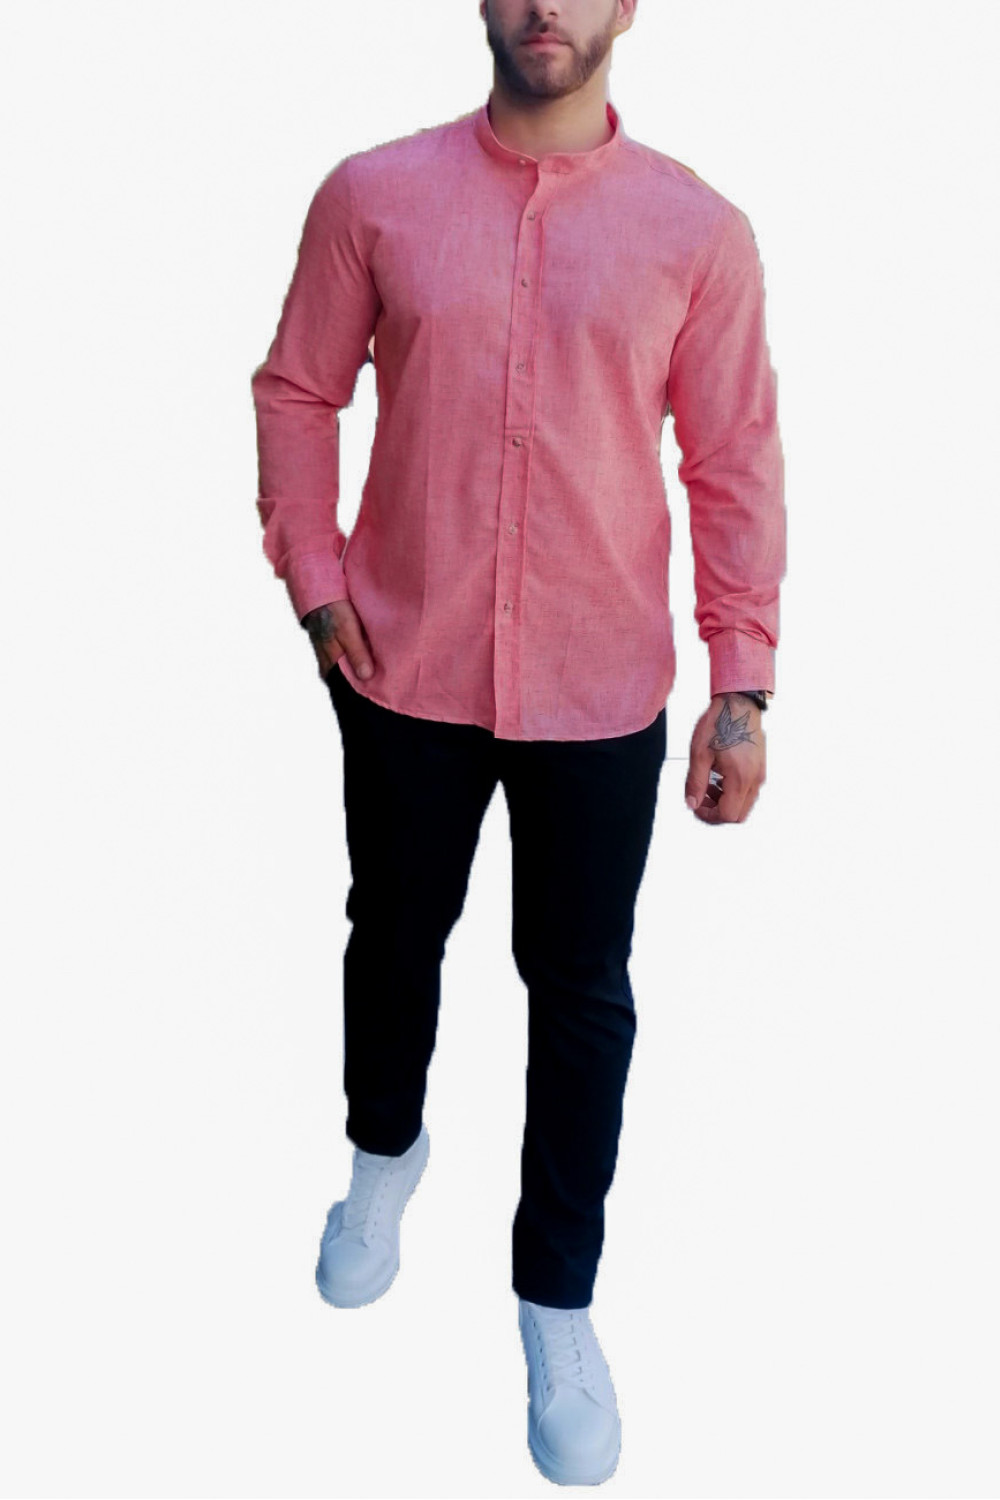 Ανδρικό σομόν λινό πουκάμισο με μάο γιακά 313024C